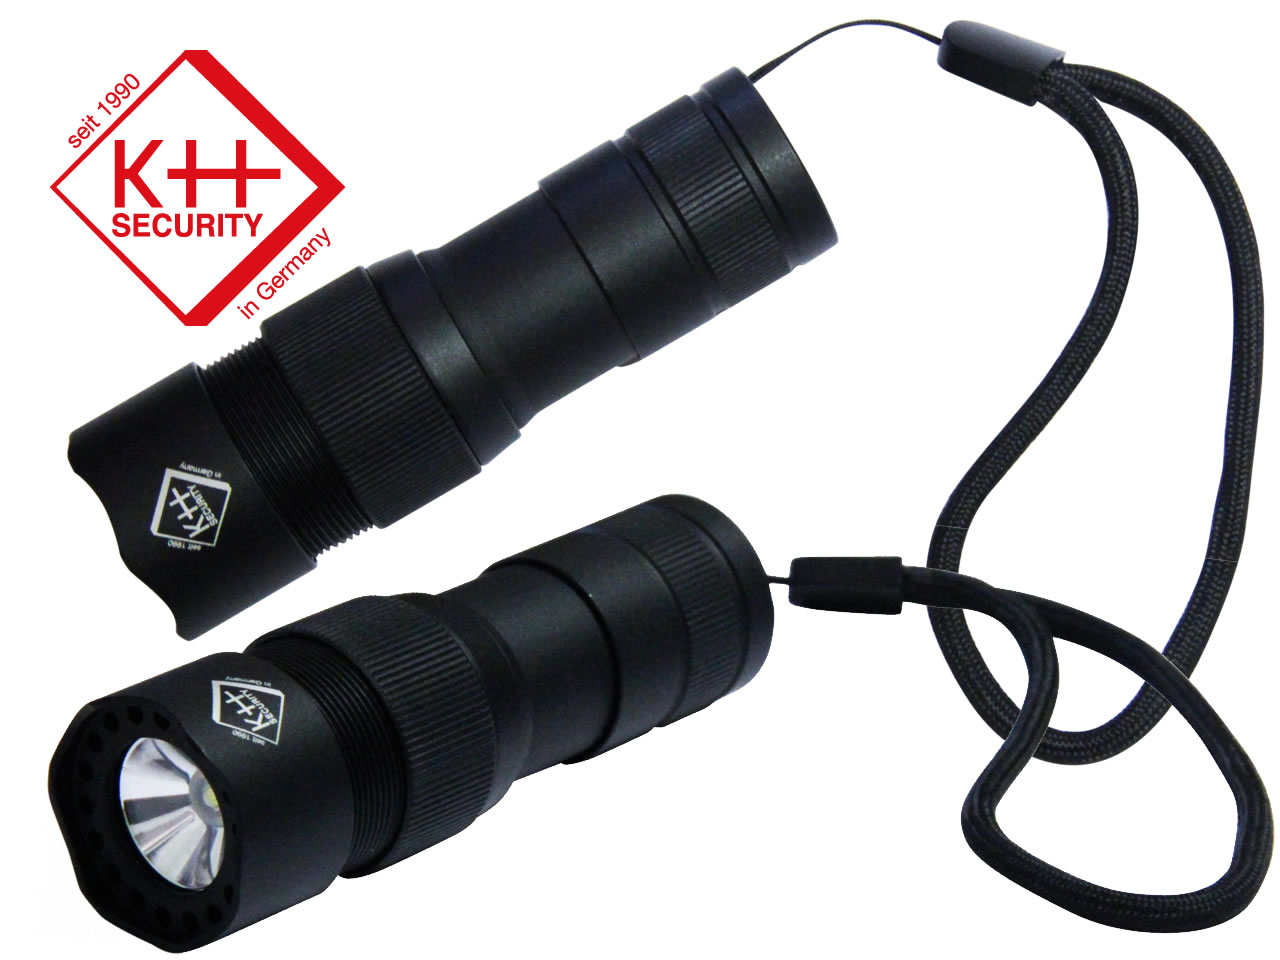 extra laut Xavax Taschenalarm Midi2 mobile Alarmanlage für Handtasche oder Schlüsselbund mit LED Taschenlampe und Trageschlaufe 115 dB 